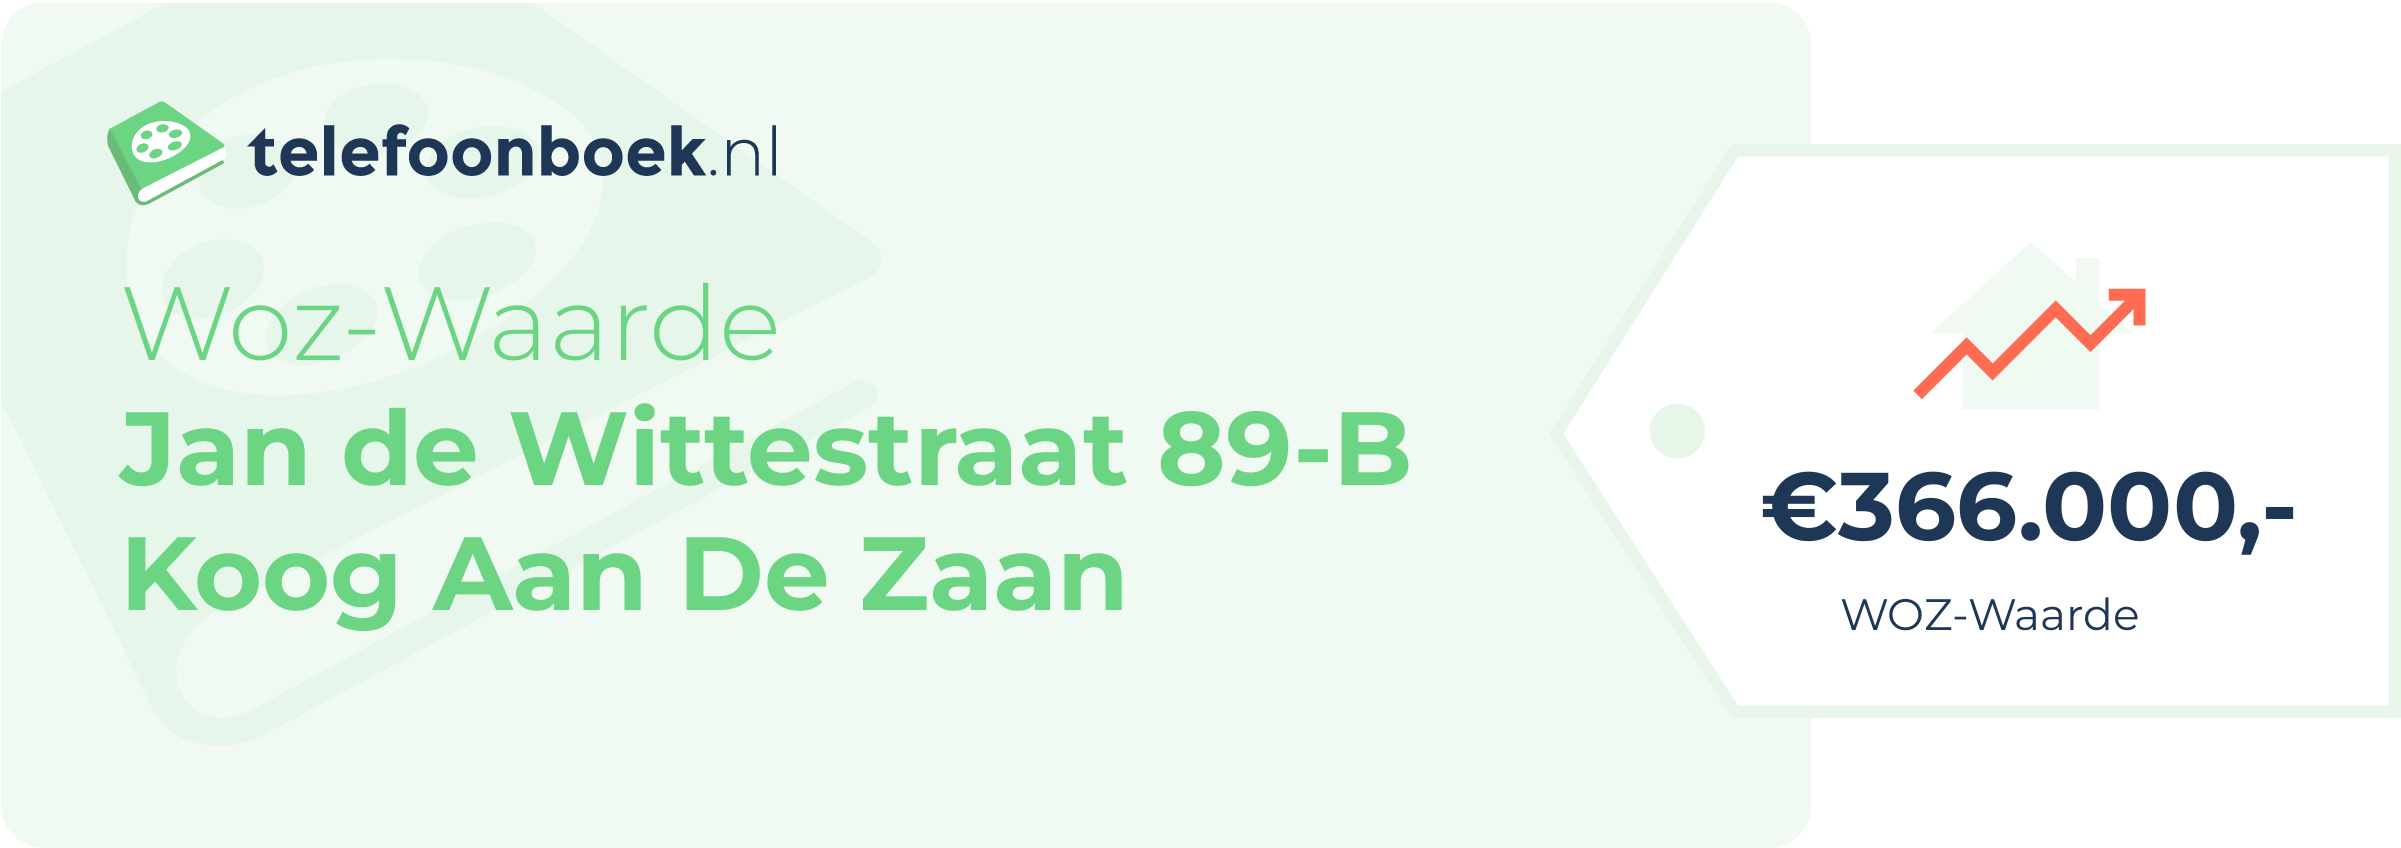 WOZ-waarde Jan De Wittestraat 89-B Koog Aan De Zaan